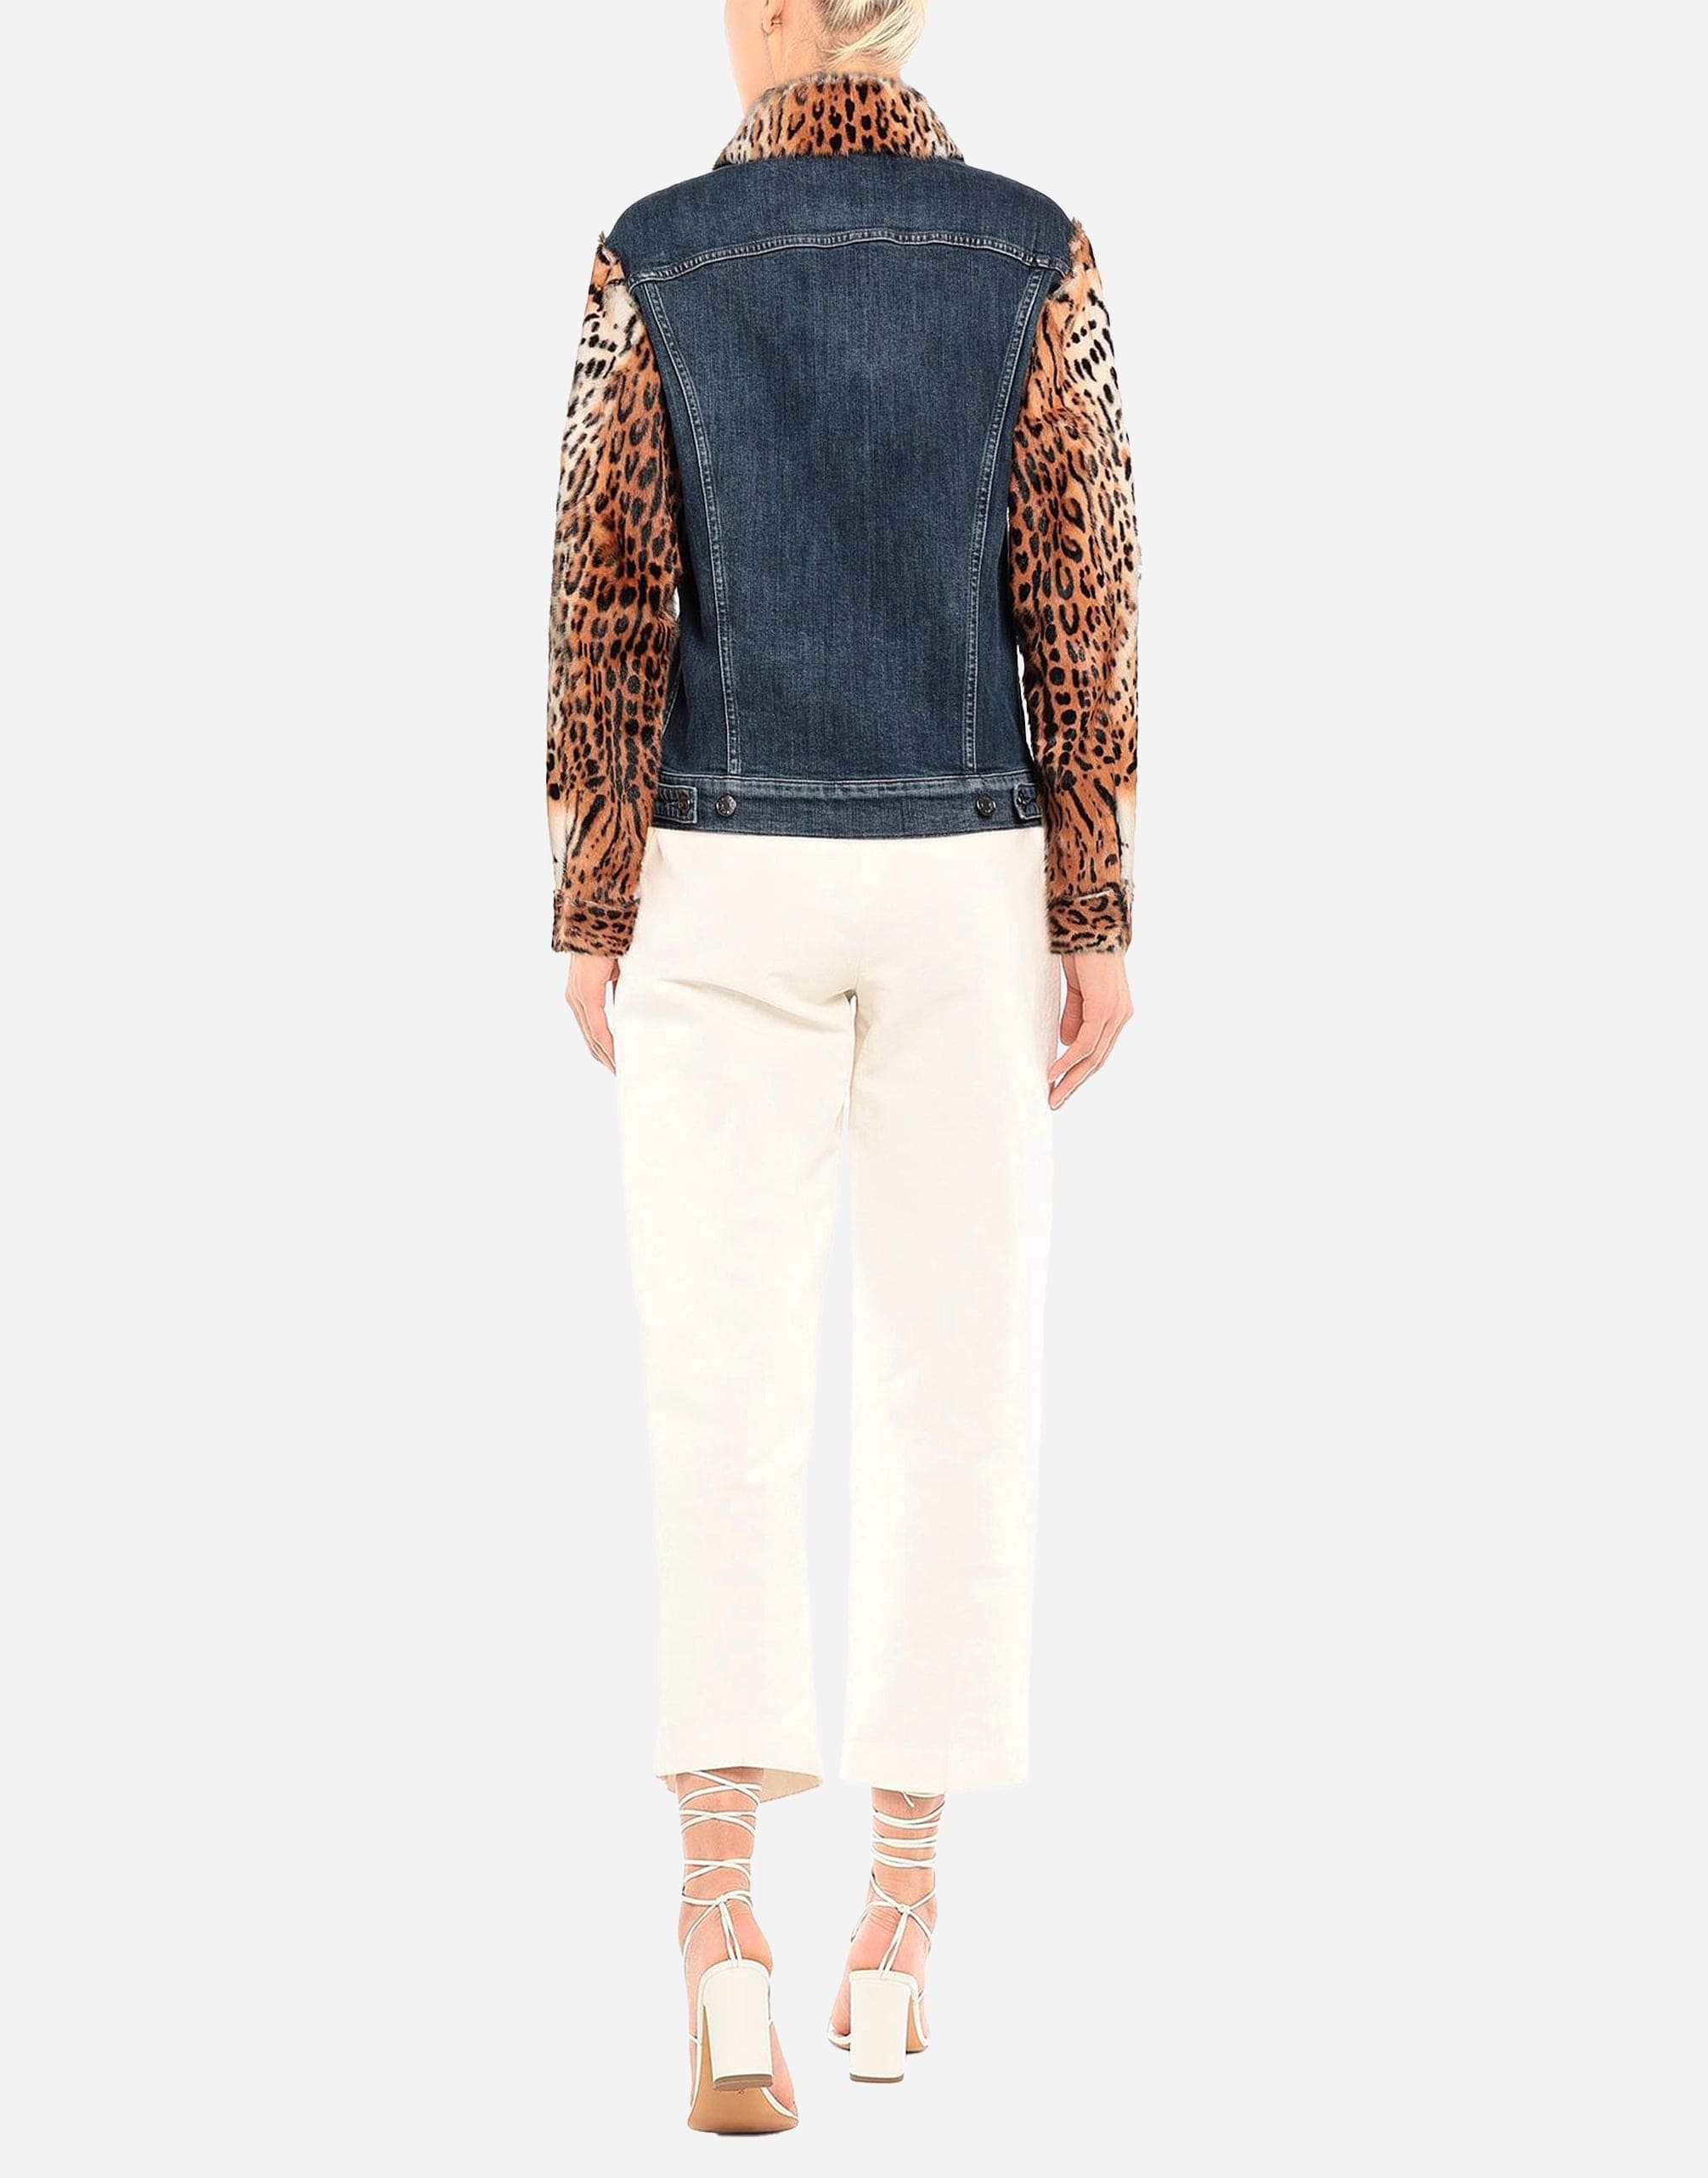 Dolce & Gabbana Leopard Print Embellished Denim Jacket